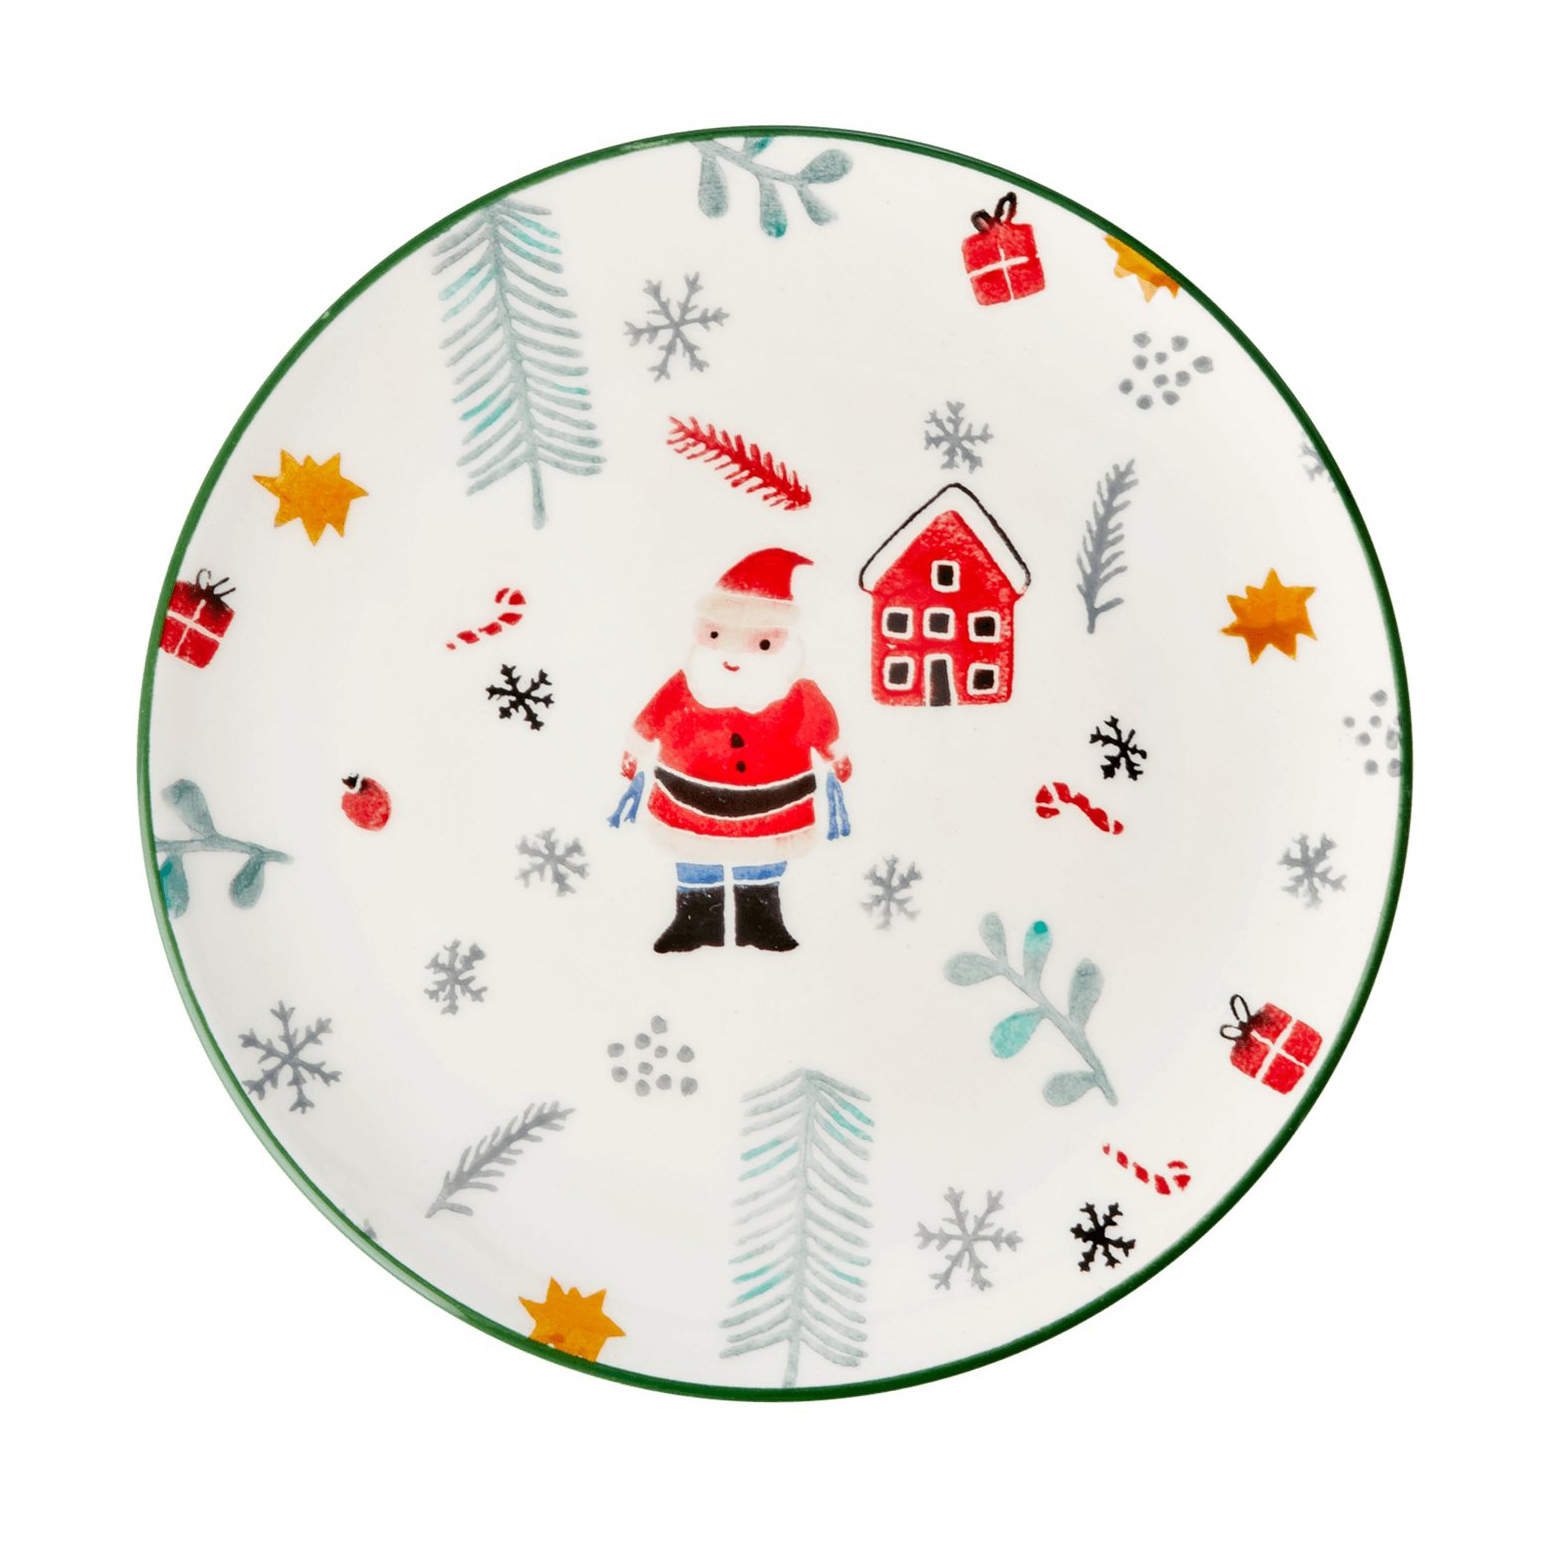 Acheter en ligne un beau gobelet Rice de Noël all XMAS avec décor Noel